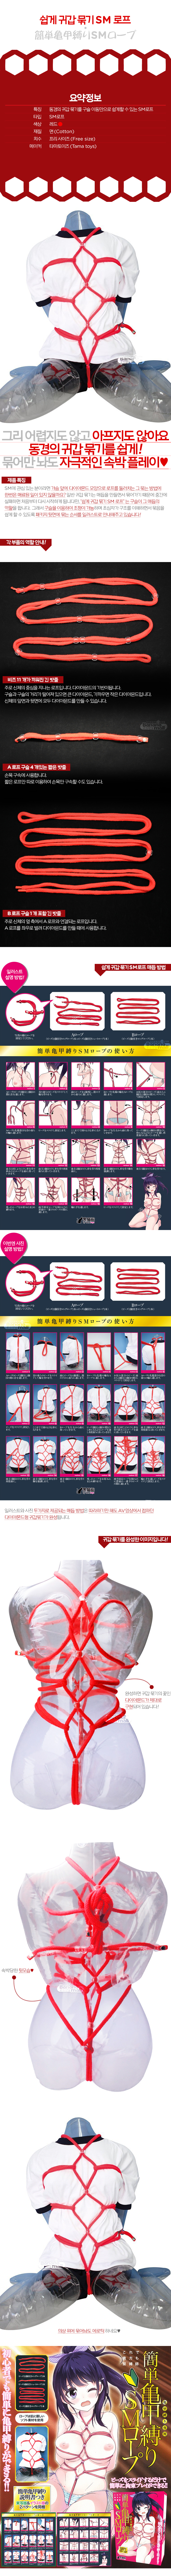 [일본 직수입] 쉽게 귀갑 묶기 SM로프(簡単亀甲縛りSMロープ)